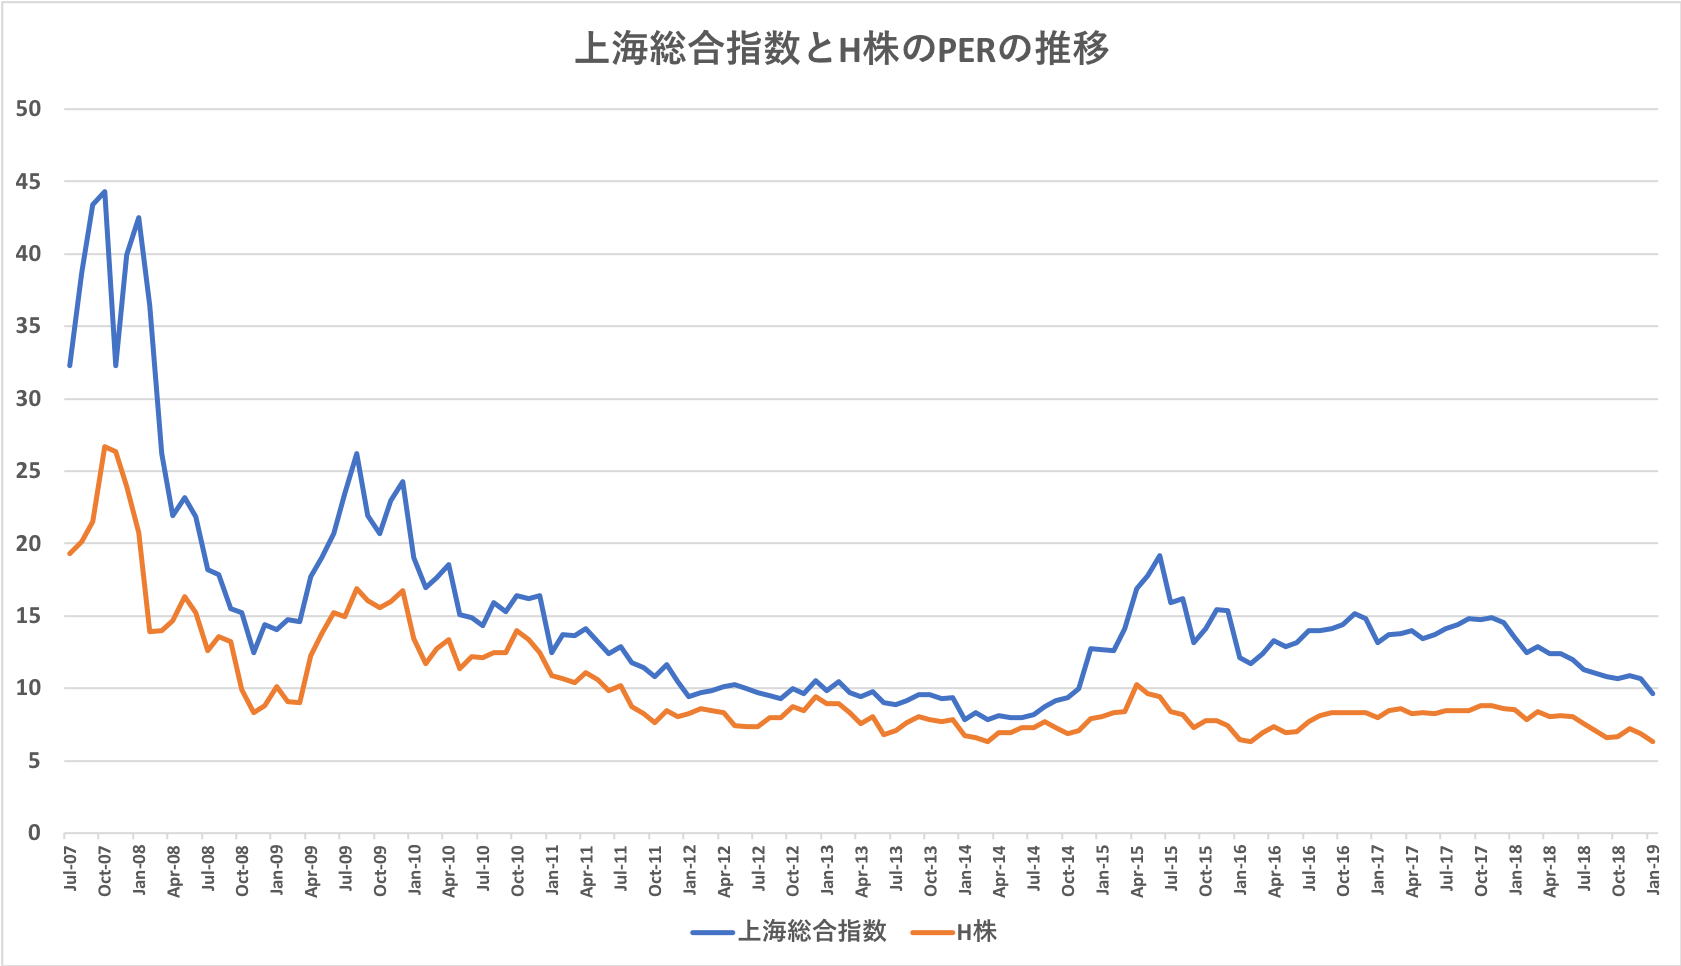 上海総合指数とH株のPER